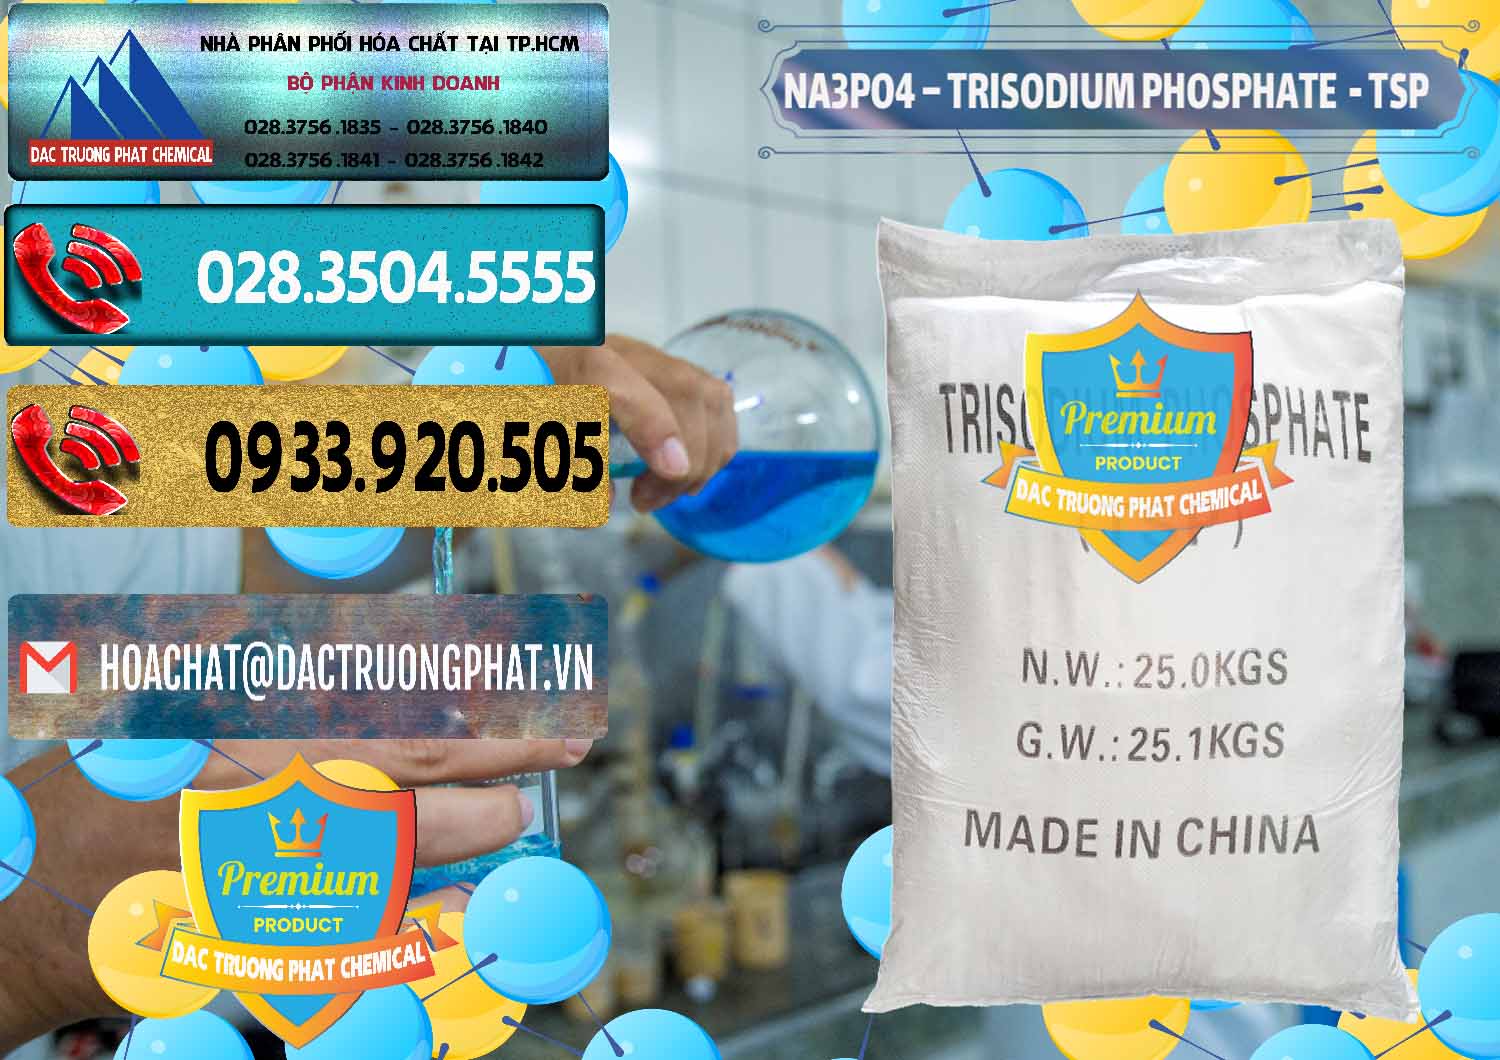 Cty bán - cung ứng Na3PO4 – Trisodium Phosphate Trung Quốc China TSP - 0103 - Nơi chuyên phân phối & cung ứng hóa chất tại TP.HCM - hoachatdetnhuom.com